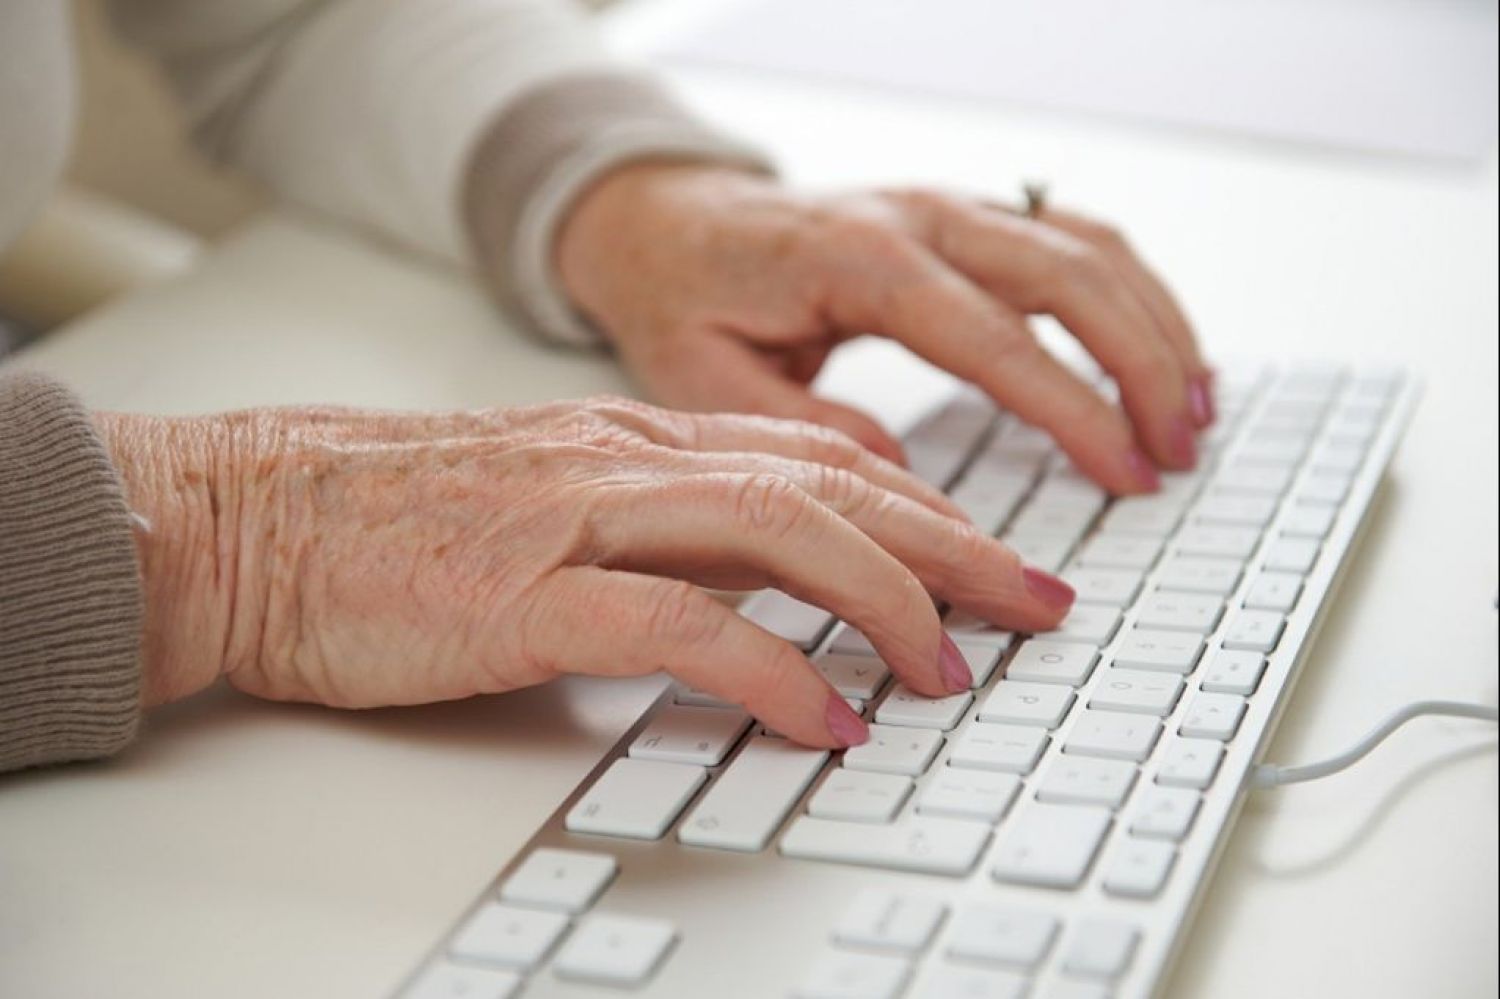 Persona mayor con ordenador